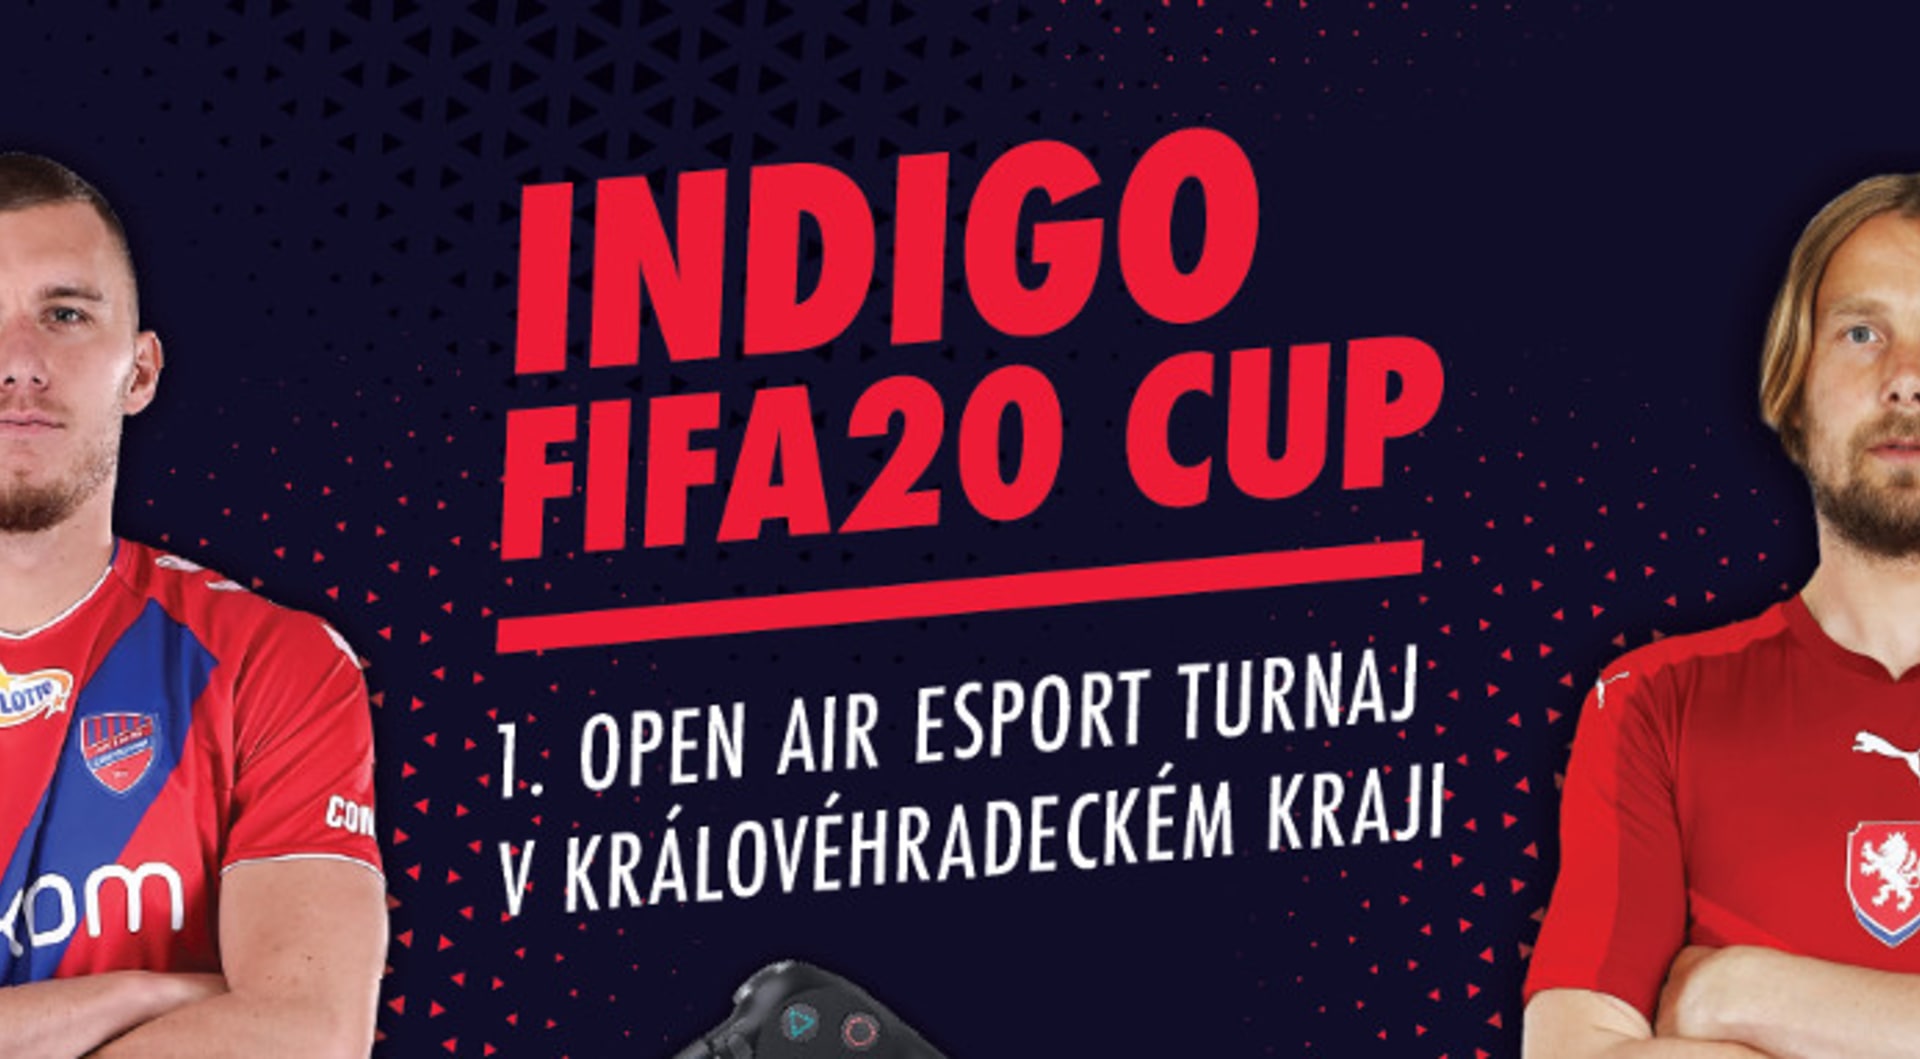 Indigo FIFA20 Cup